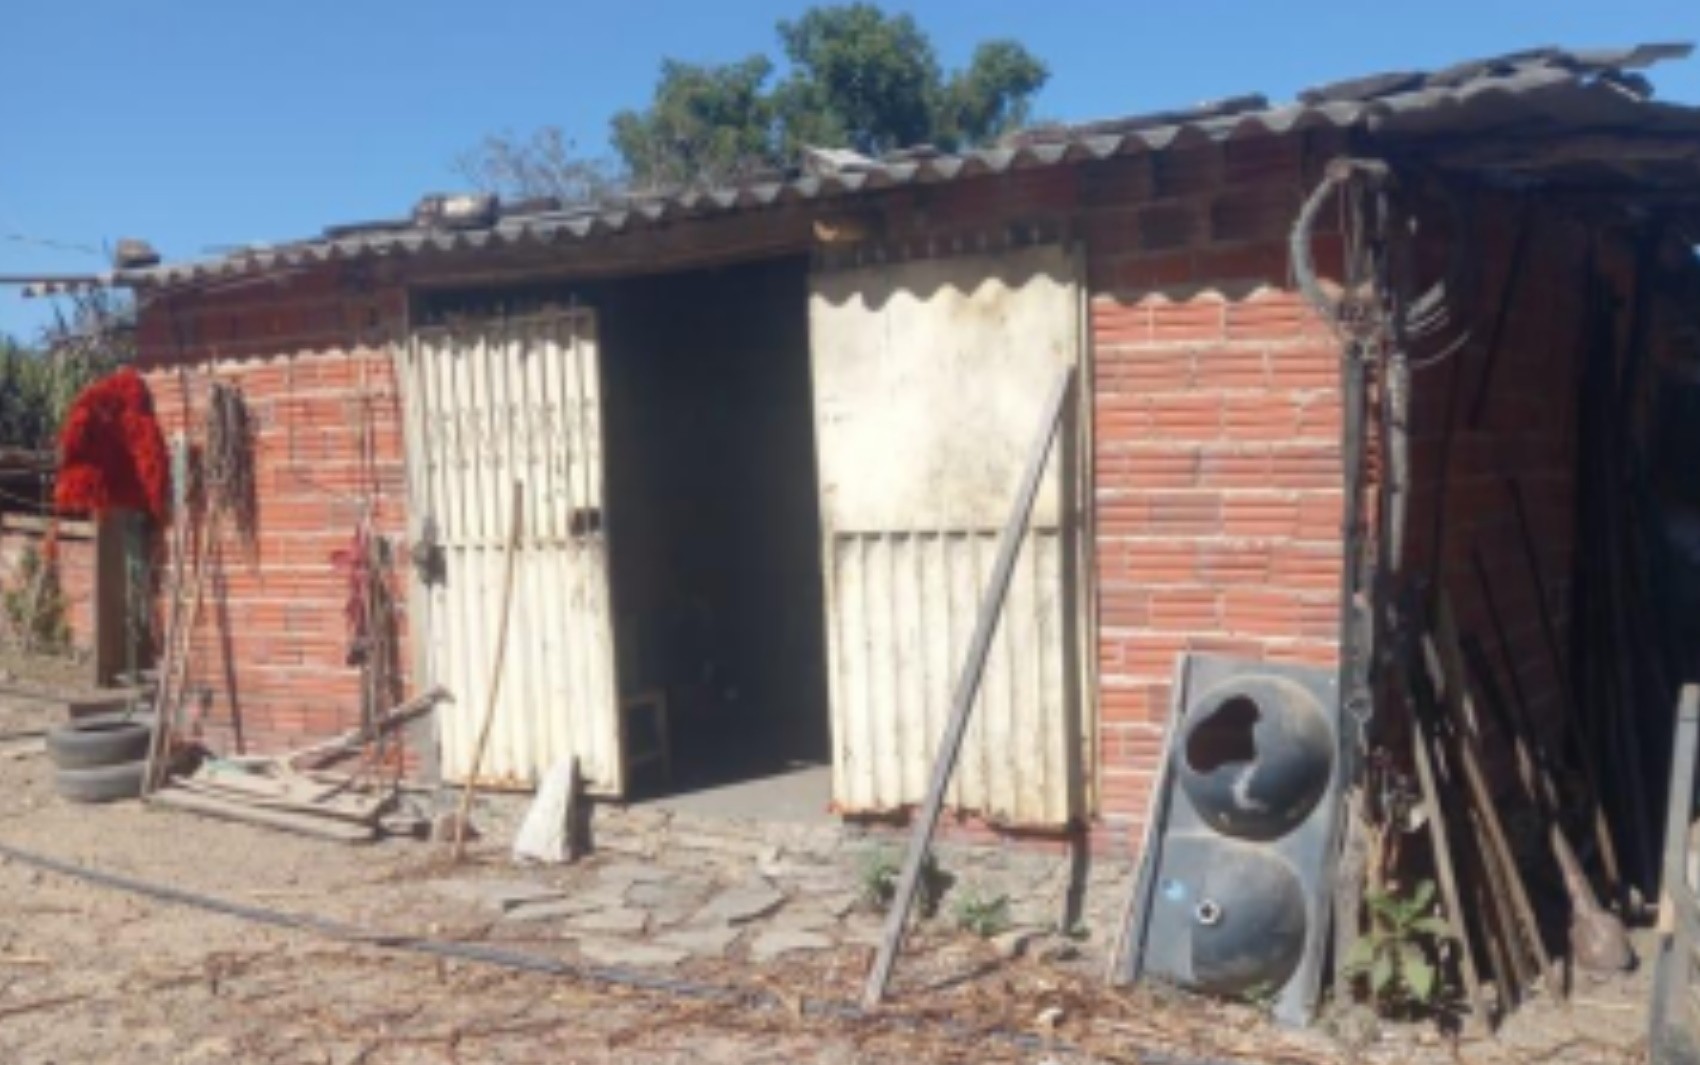 Polícia investiga se idoso resgatado de fazenda era vítima de trabalho análogo à escravidão, em Pirenópolis